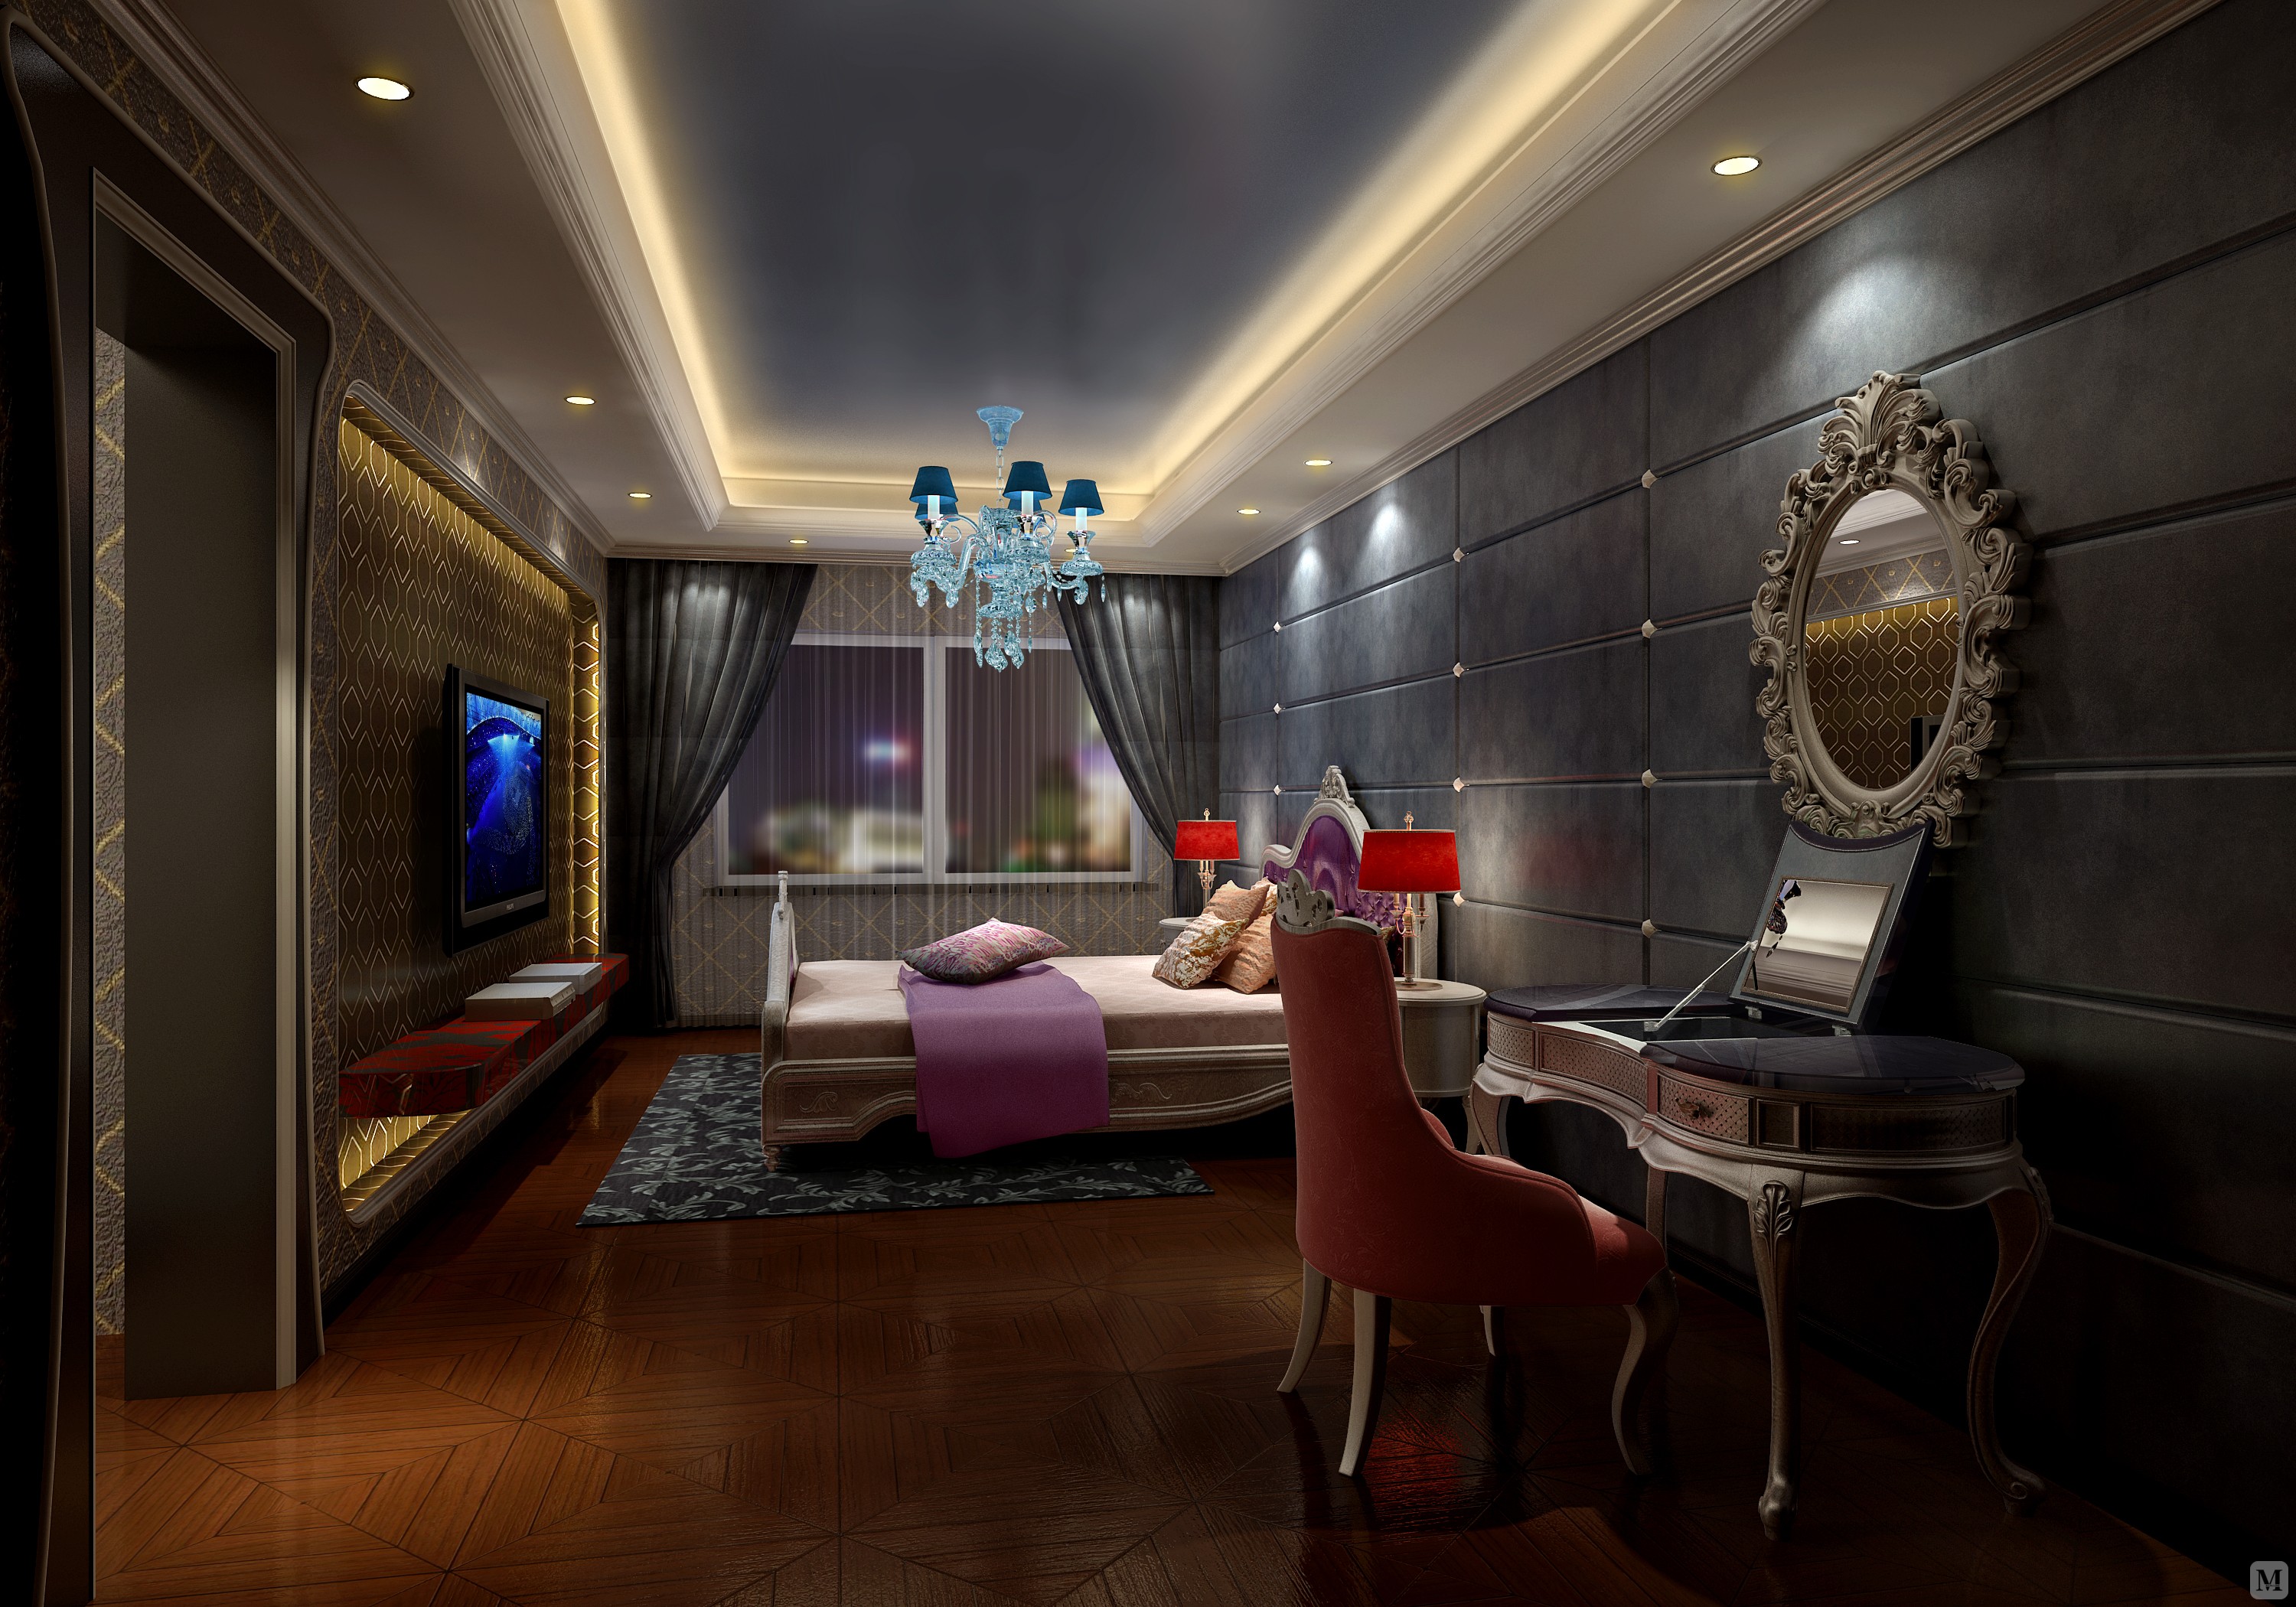 上海财富海景公寓
面积：330平方
造价：5000/平方
风格：后现代风格
体大气、通透、豪华，后现代风格更能达到好的效果